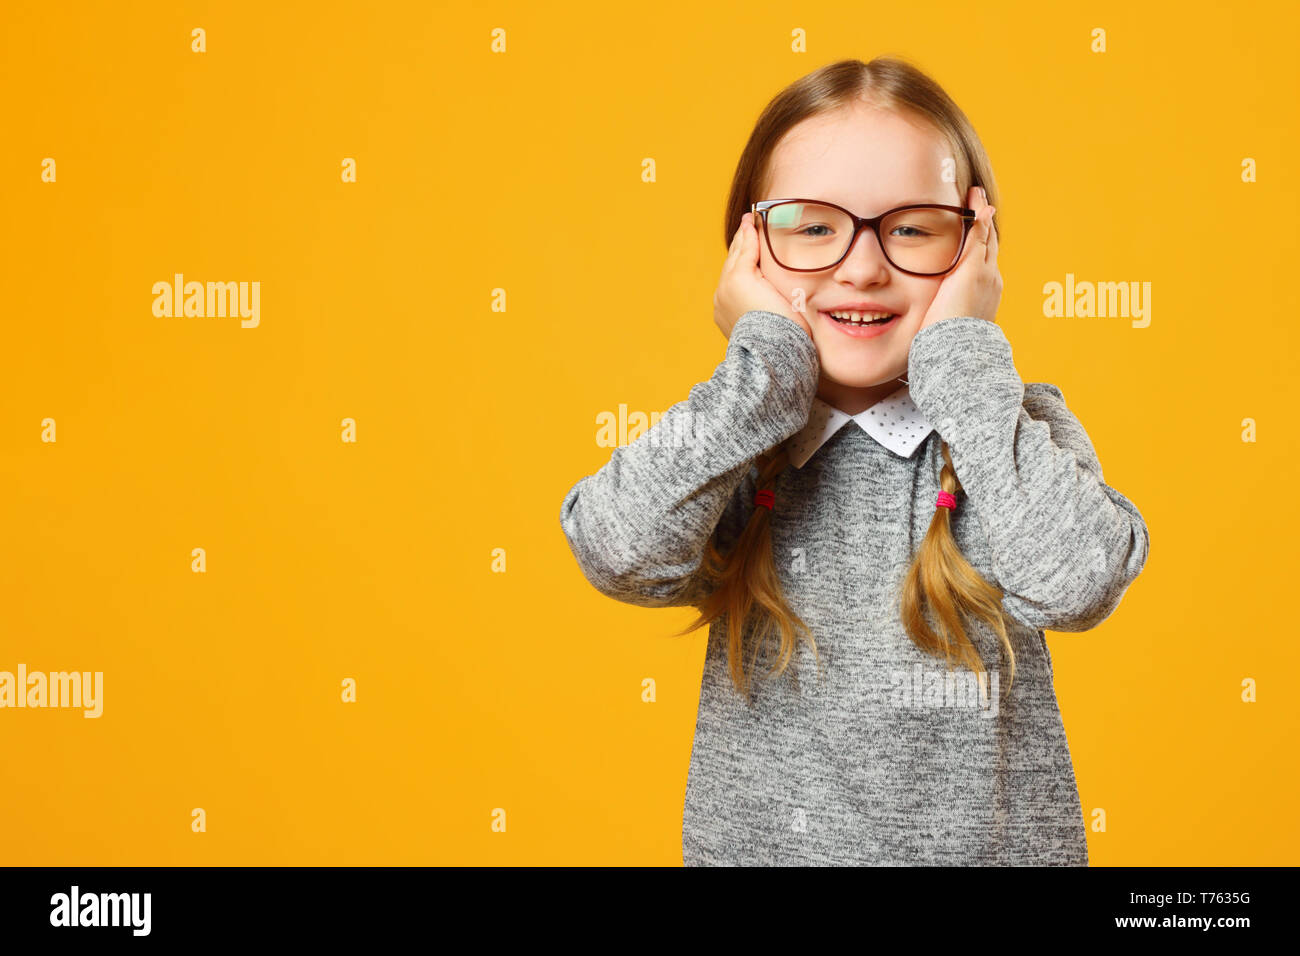 Closeup portrait of a smiling little girl sur fond jaune. Écolière de l'enfant regardant la caméra et tenant son visage dans ses mains. Banque D'Images